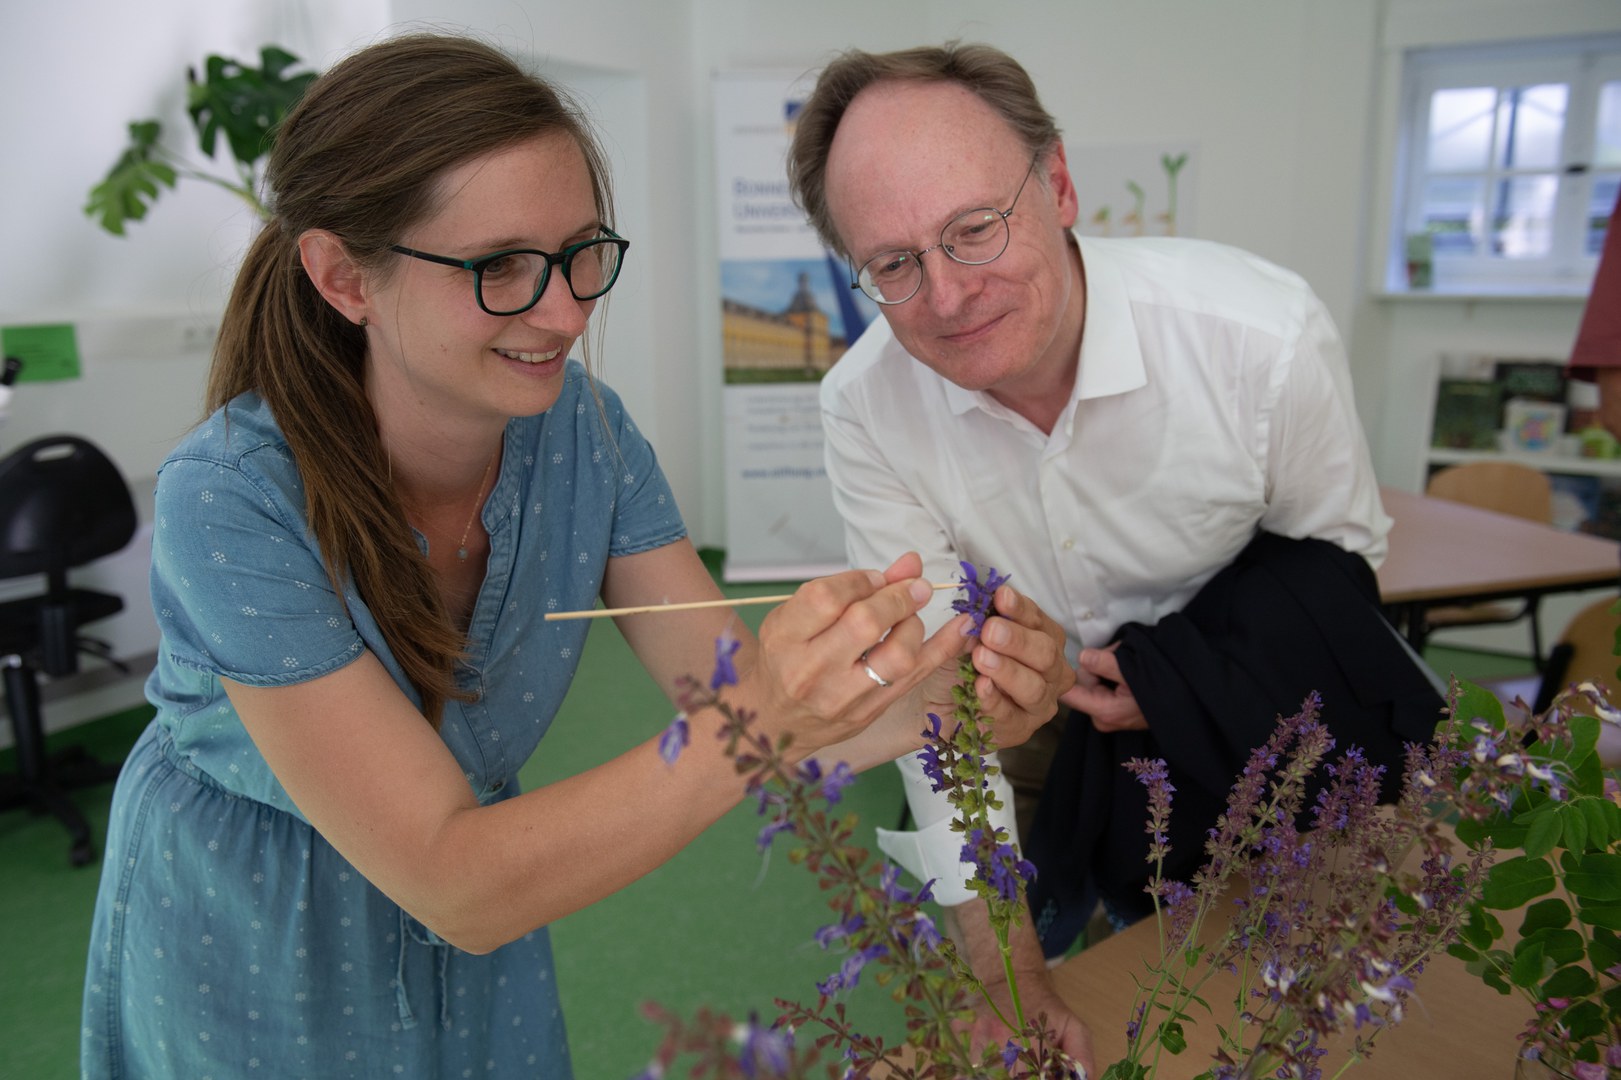 Bei der Pflanzenbestimmung: Lisabeth Hoff von der Lernwerkstatt und Prof. Dr. Rainer Hüttemann testen die Geräte und Angebote aus